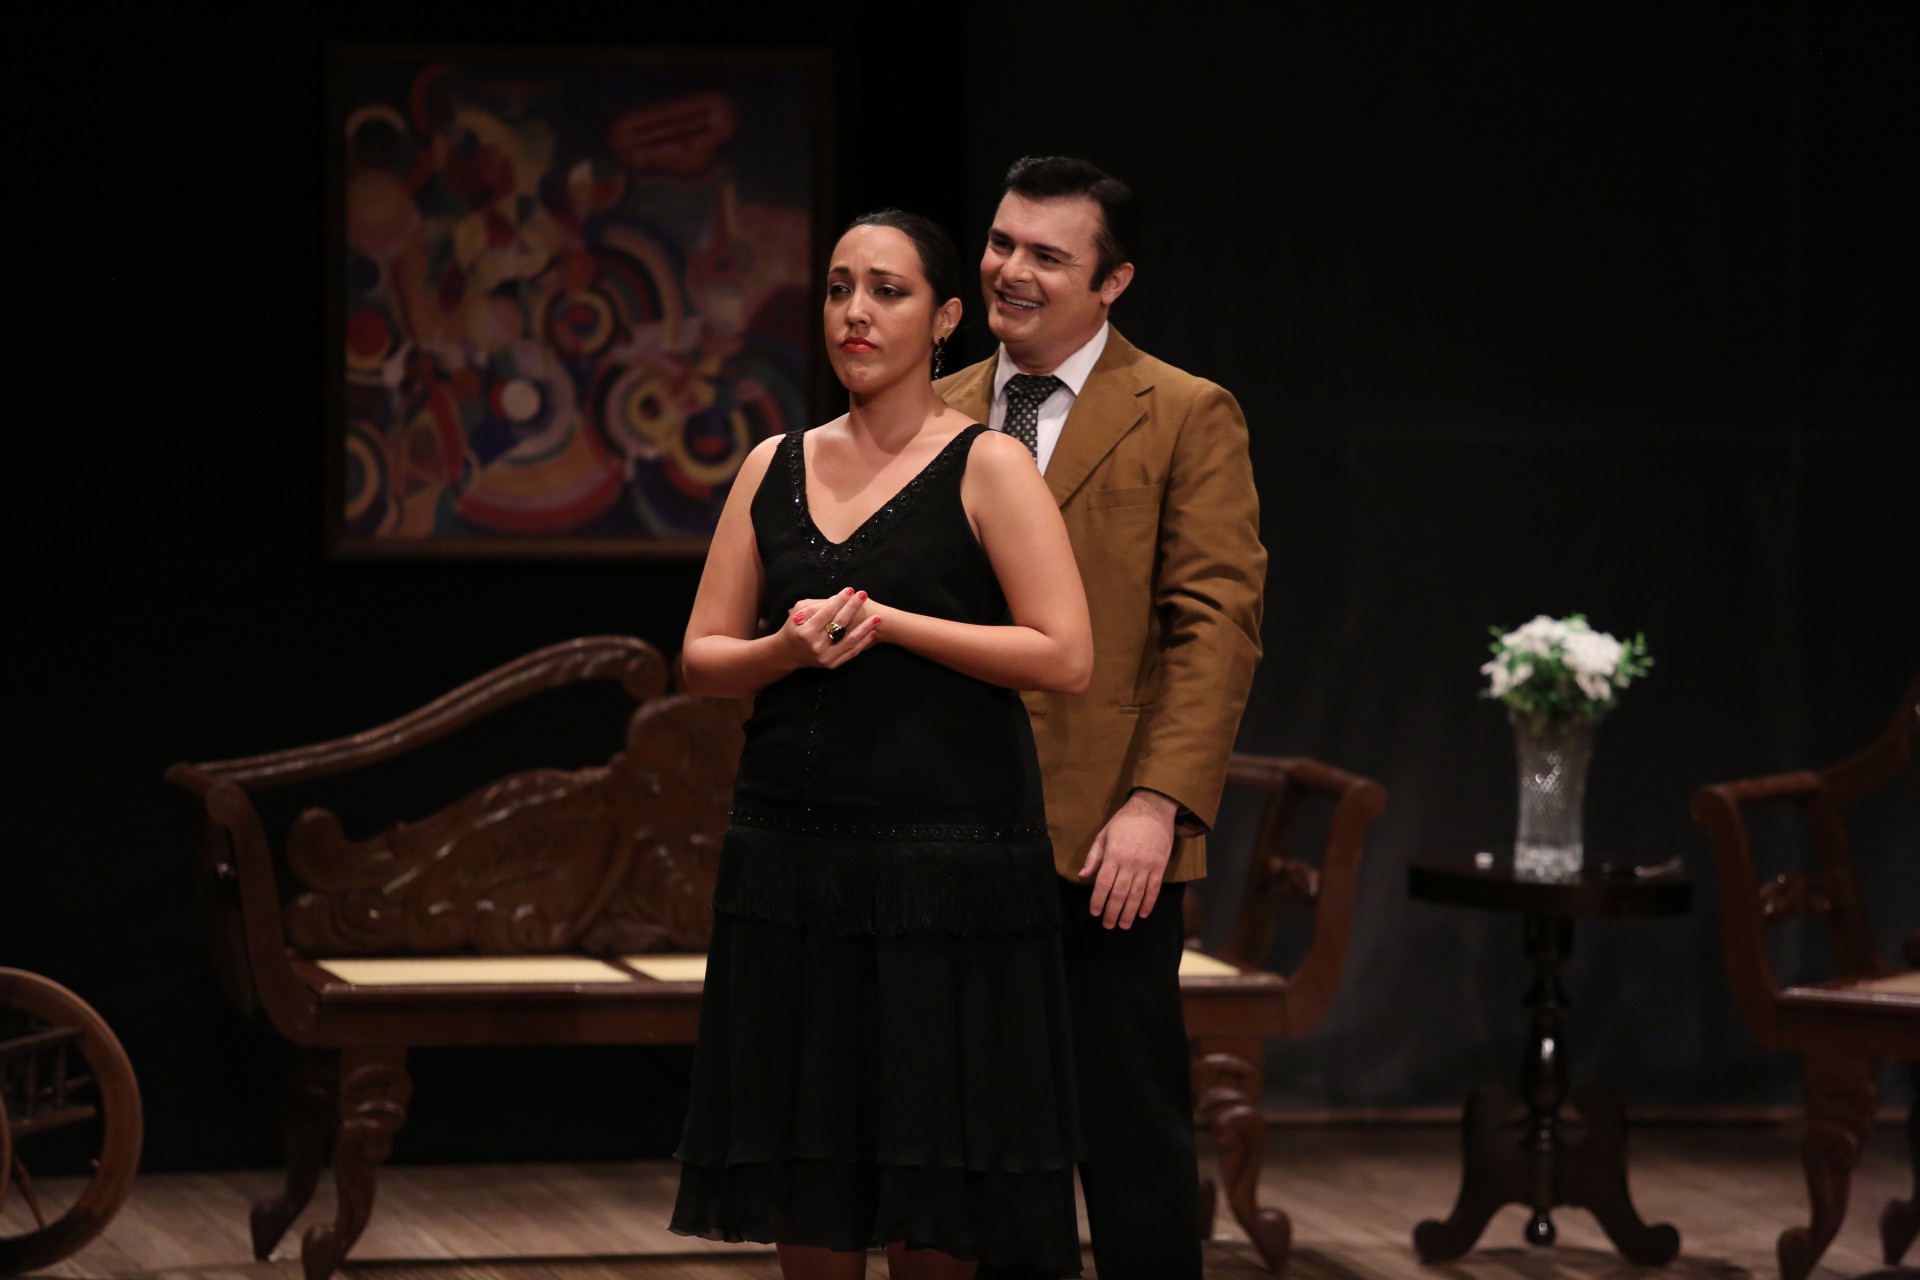 O Teatro Celina Queiroz recebe a partir desta sexta-feira, 13, o espetáculo "Tarsila", promovido em meio ao ano do centenário da Semana de Arte Moderna (Foto: Ares Soares/Divulgação)